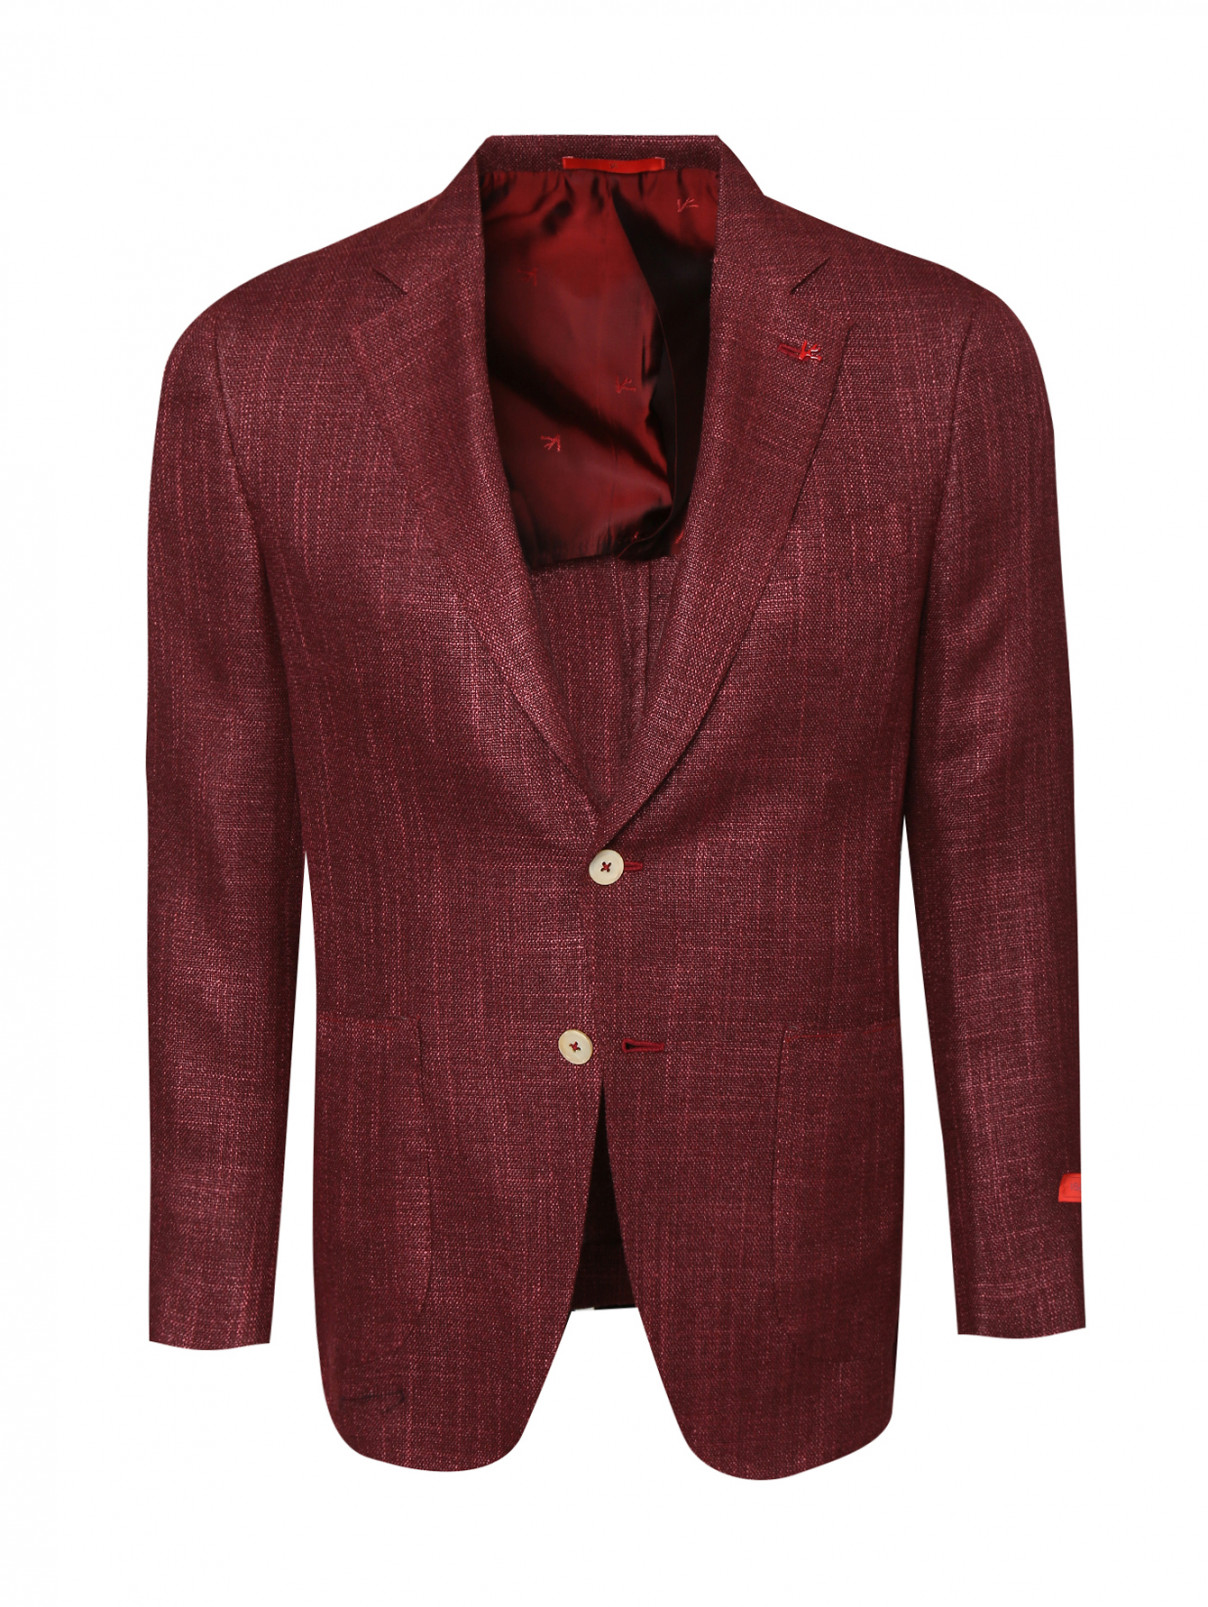 Пиджак из шерсти и шелка с накладными карманами Isaia  –  Общий вид  – Цвет:  Красный